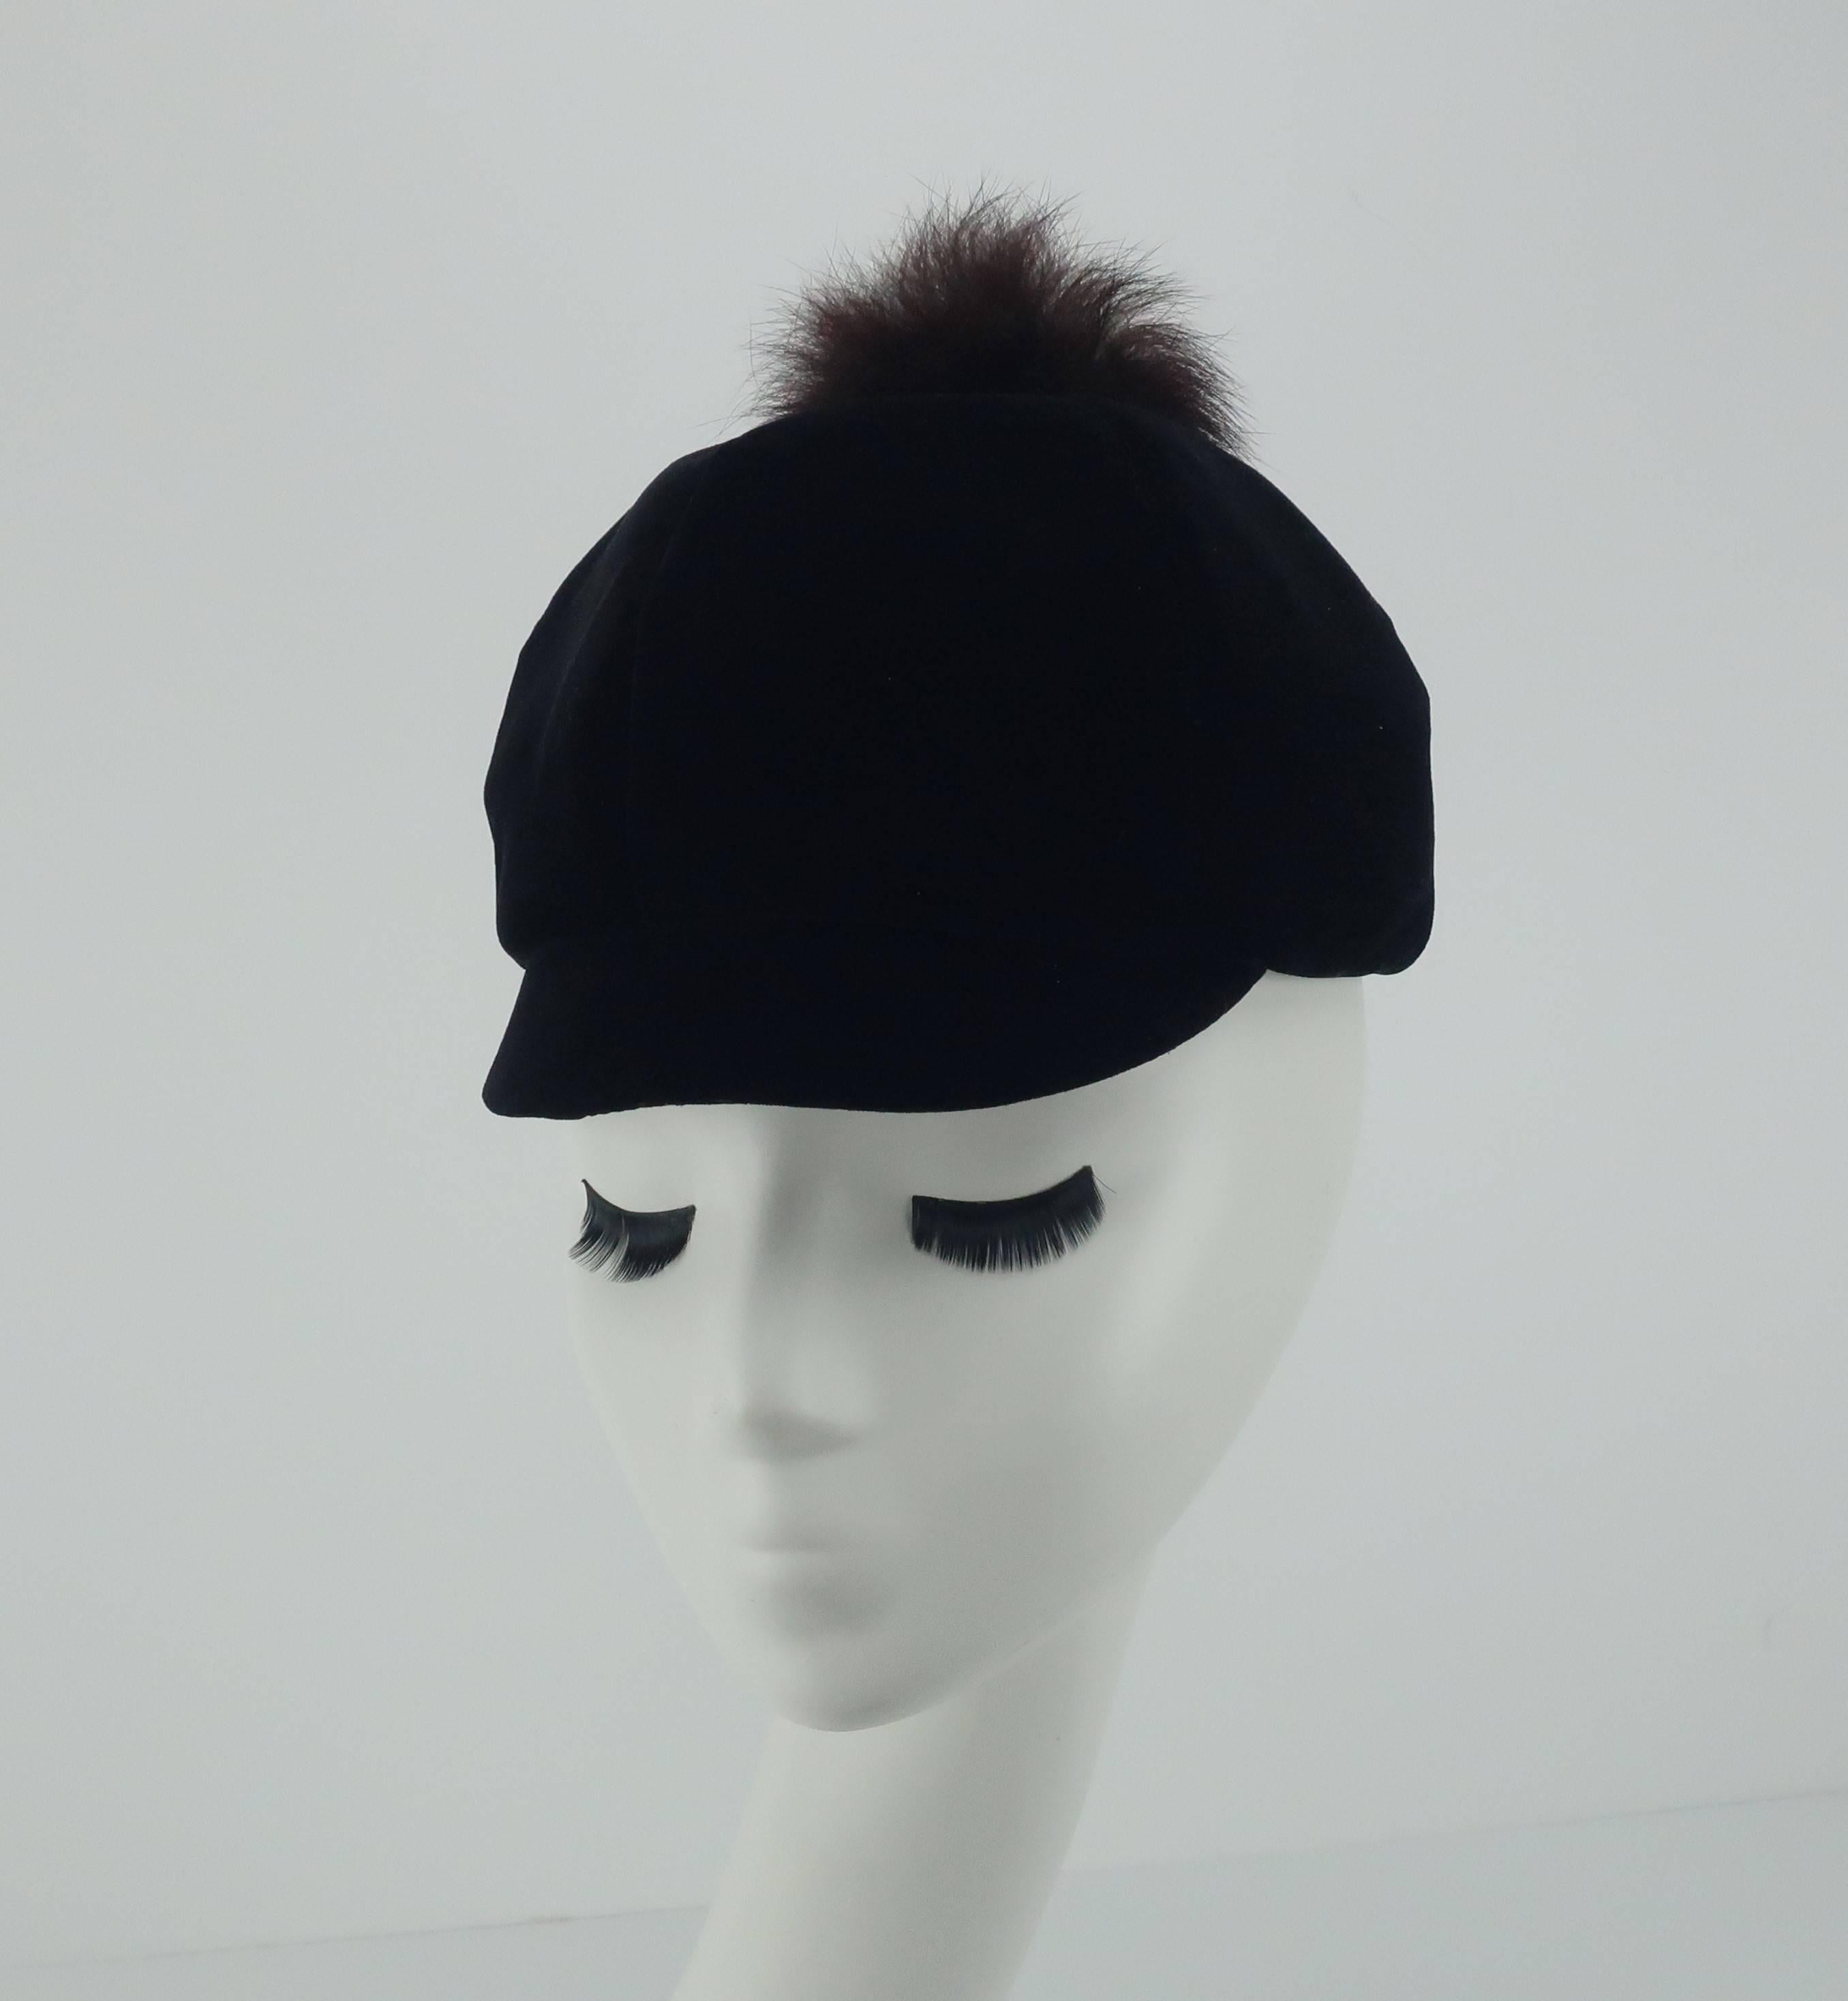 Women's Mod C.1960 Black Velvet Cap Hat With Fur Pom Pom